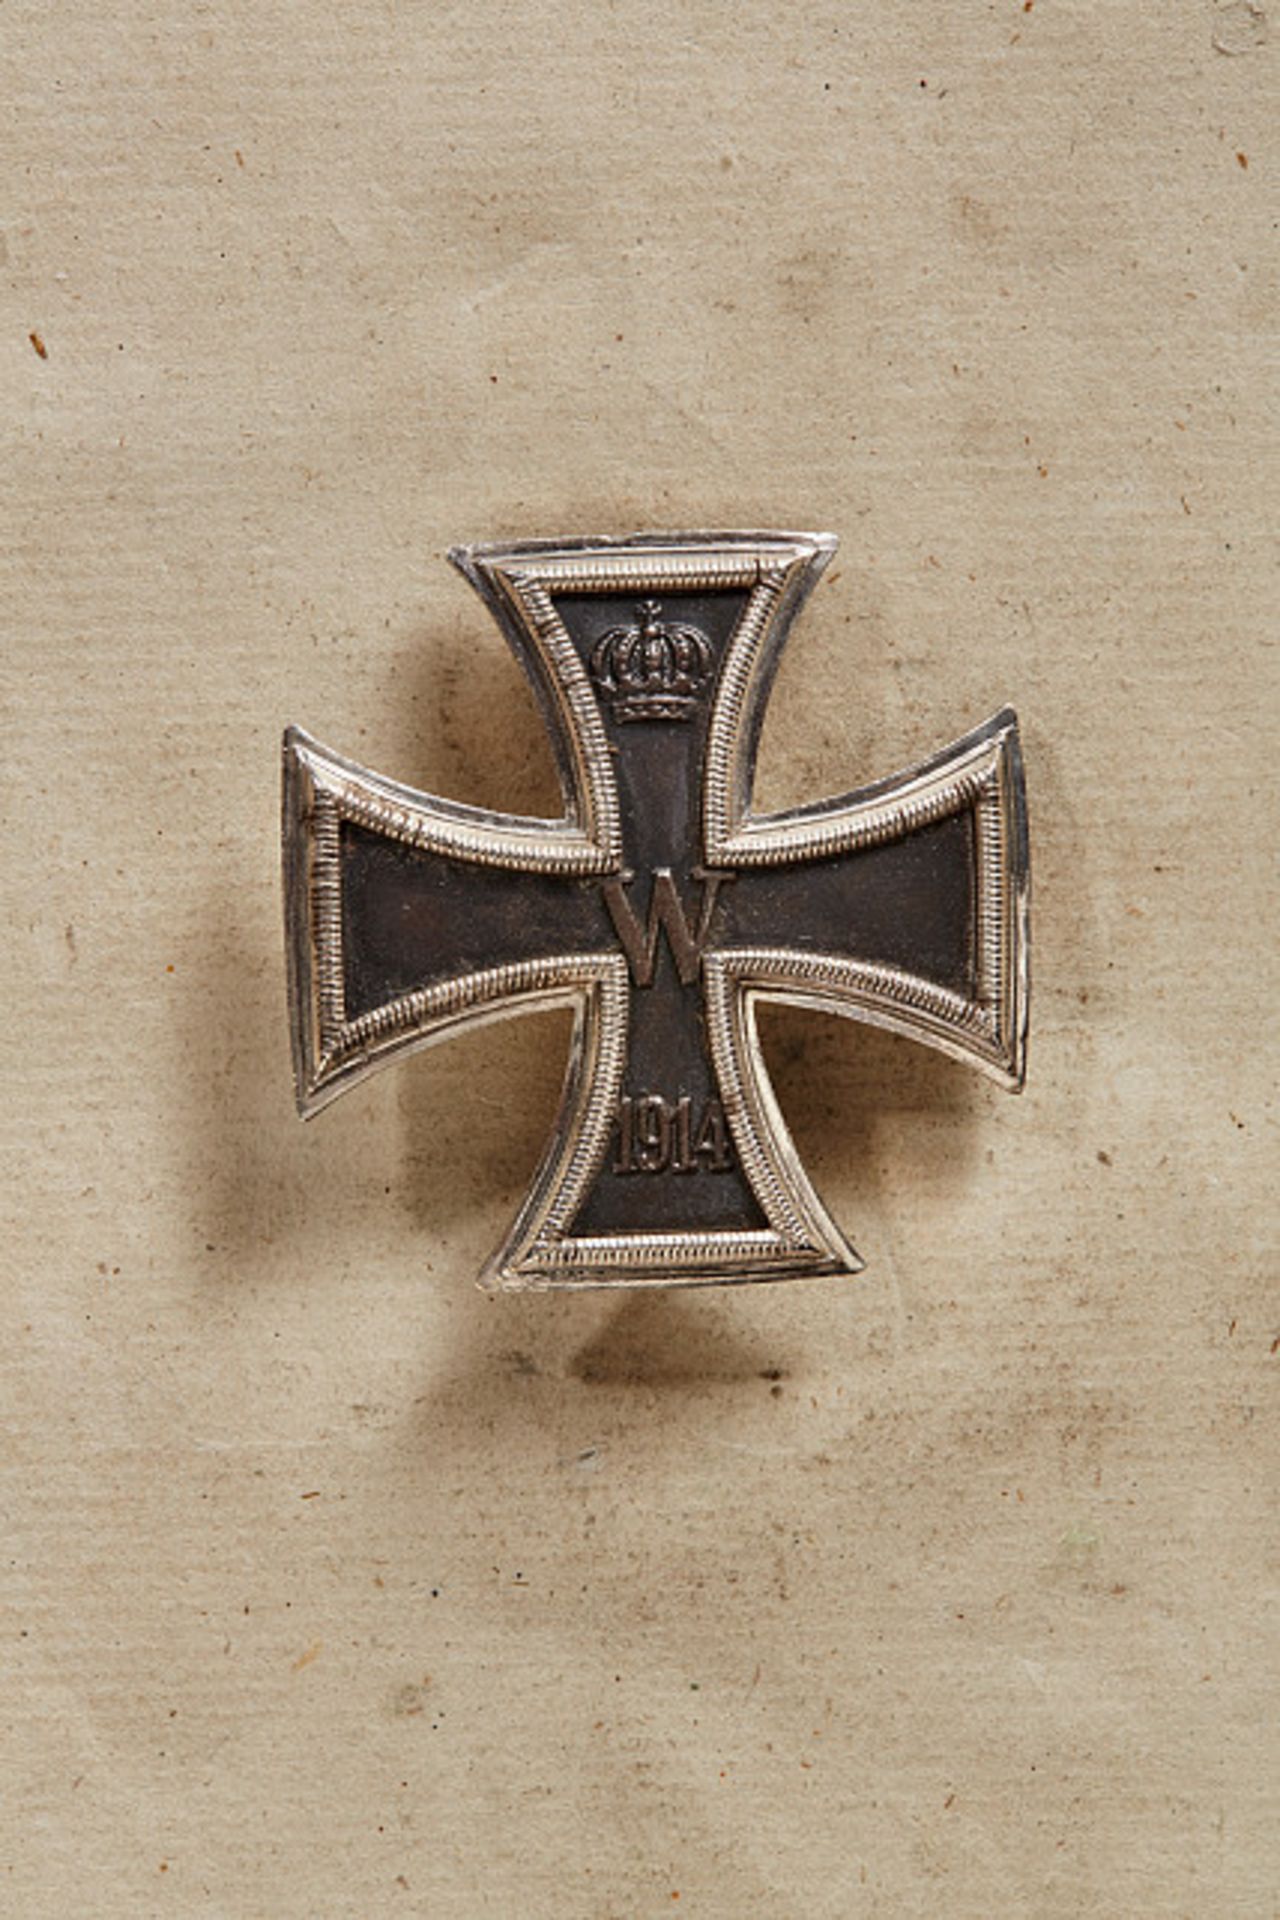 KÖNIGREICH PREUSSEN - EISERNES KREUZ : Eisernes Kreuz 1. Klasse 1914. Silber, an Nadel. Auf der - Image 2 of 2